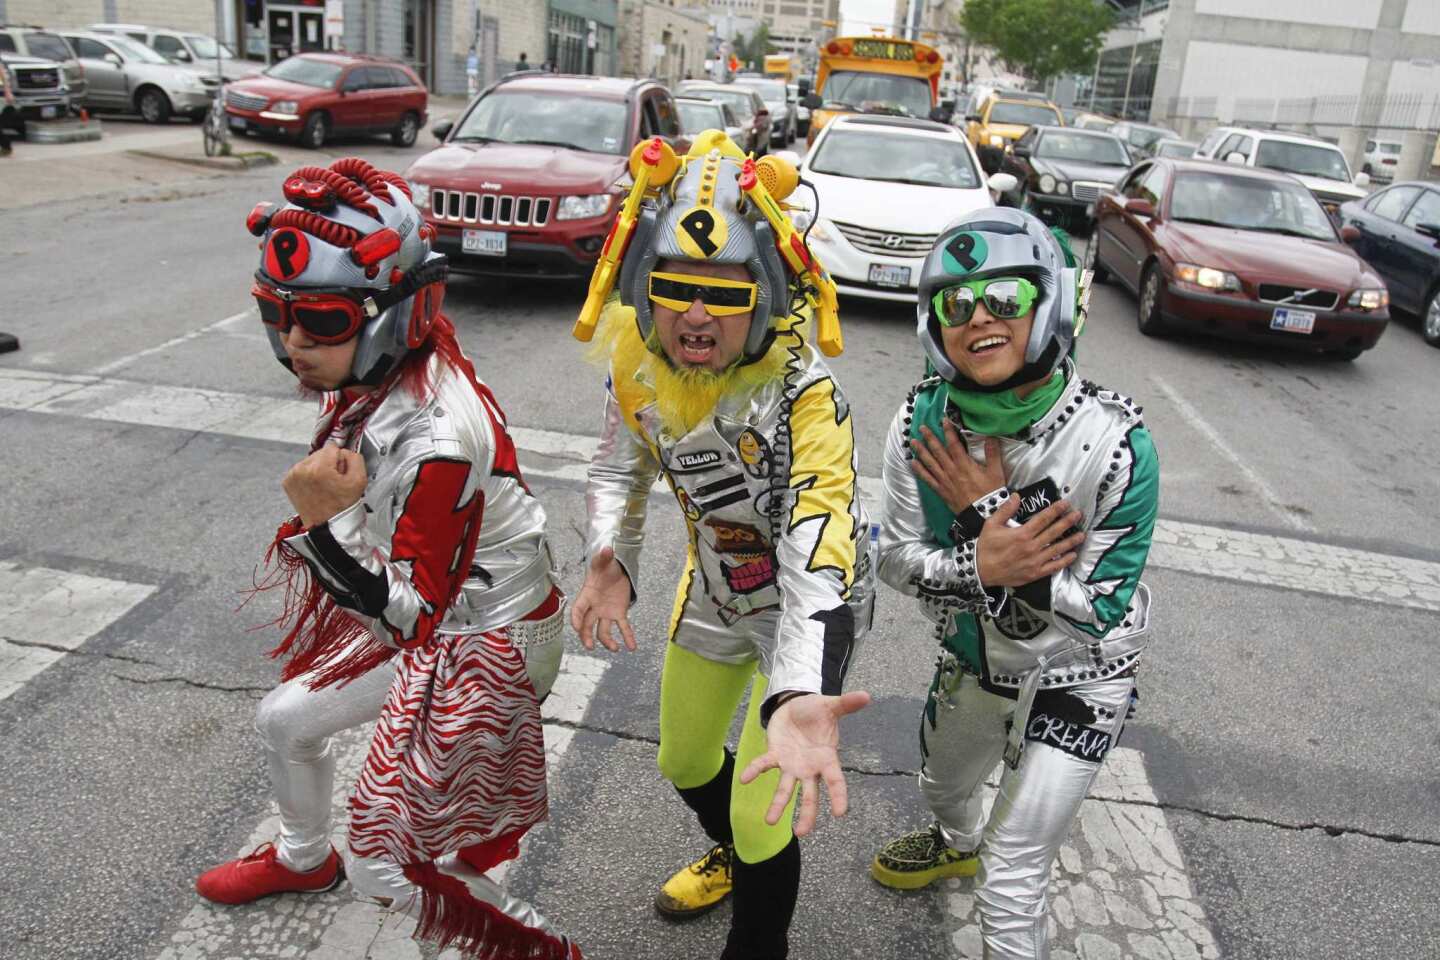 Members of Peelander-Z, from New York via Japan, stop to pose in a crosswalk in downtown Austin, Texas.